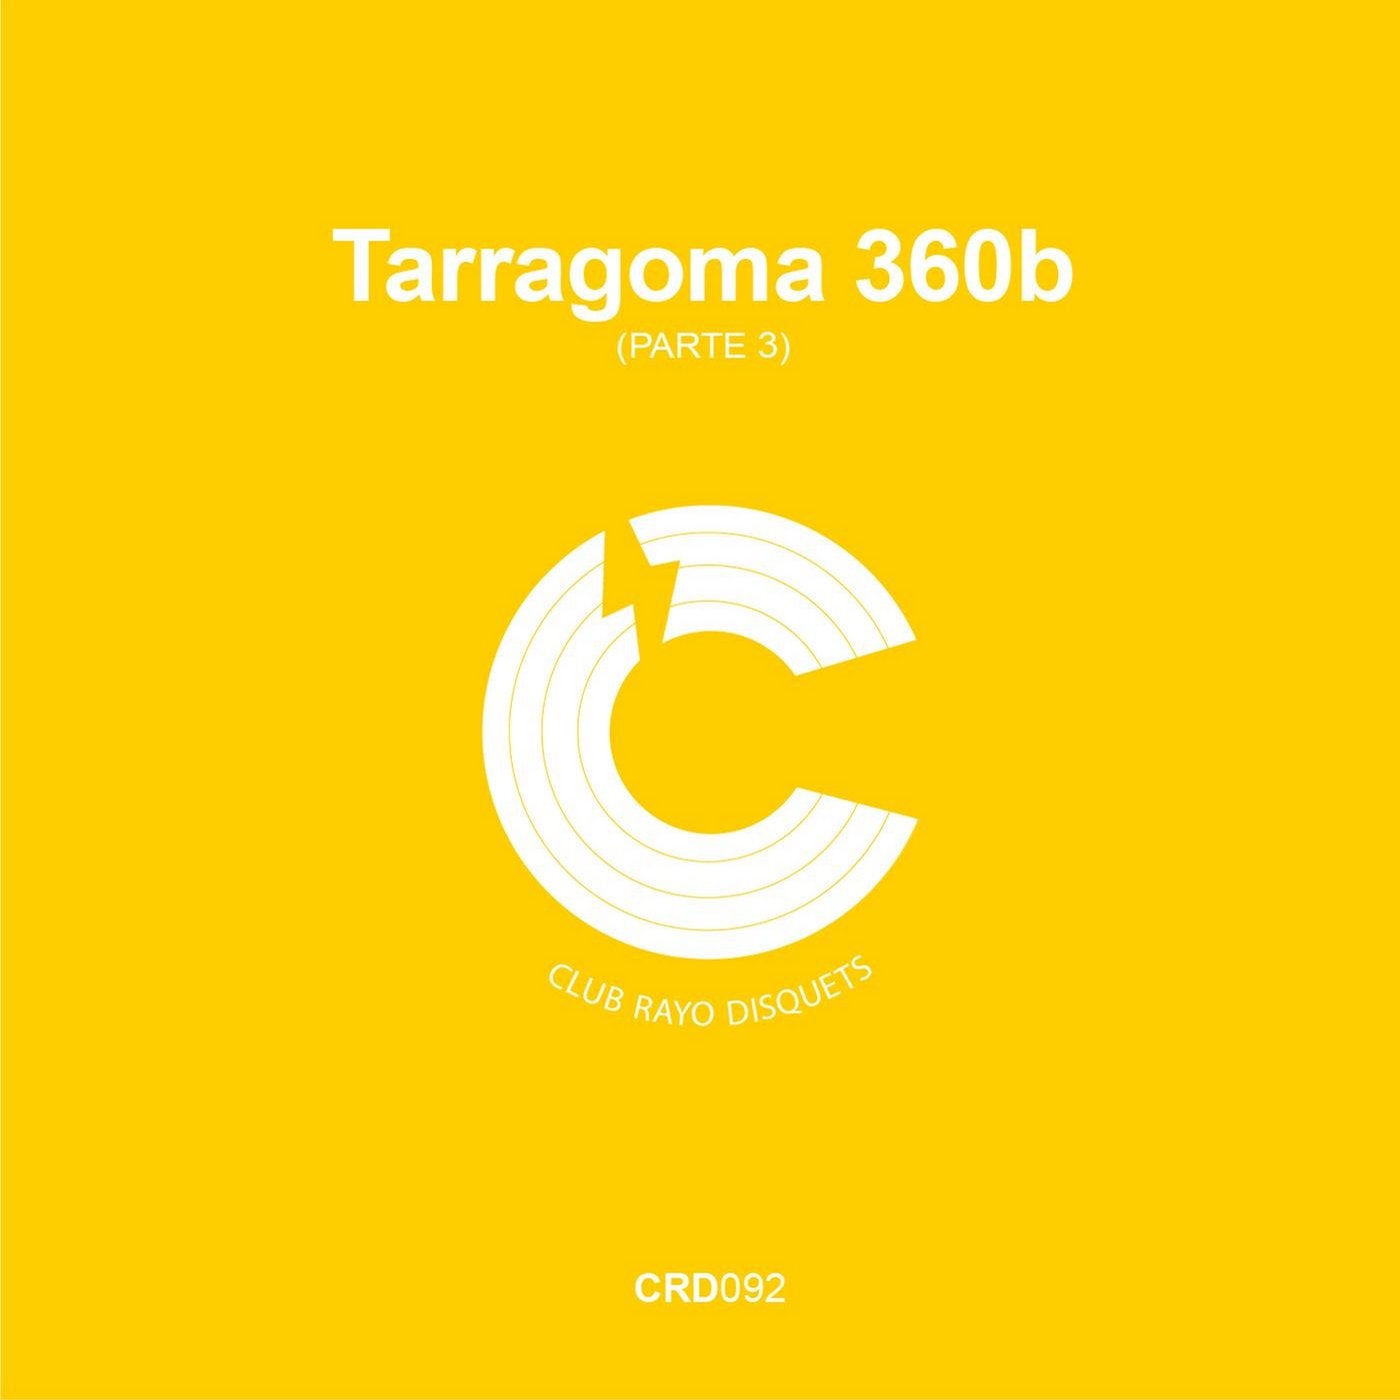 Tarragona 360b (parte 3)